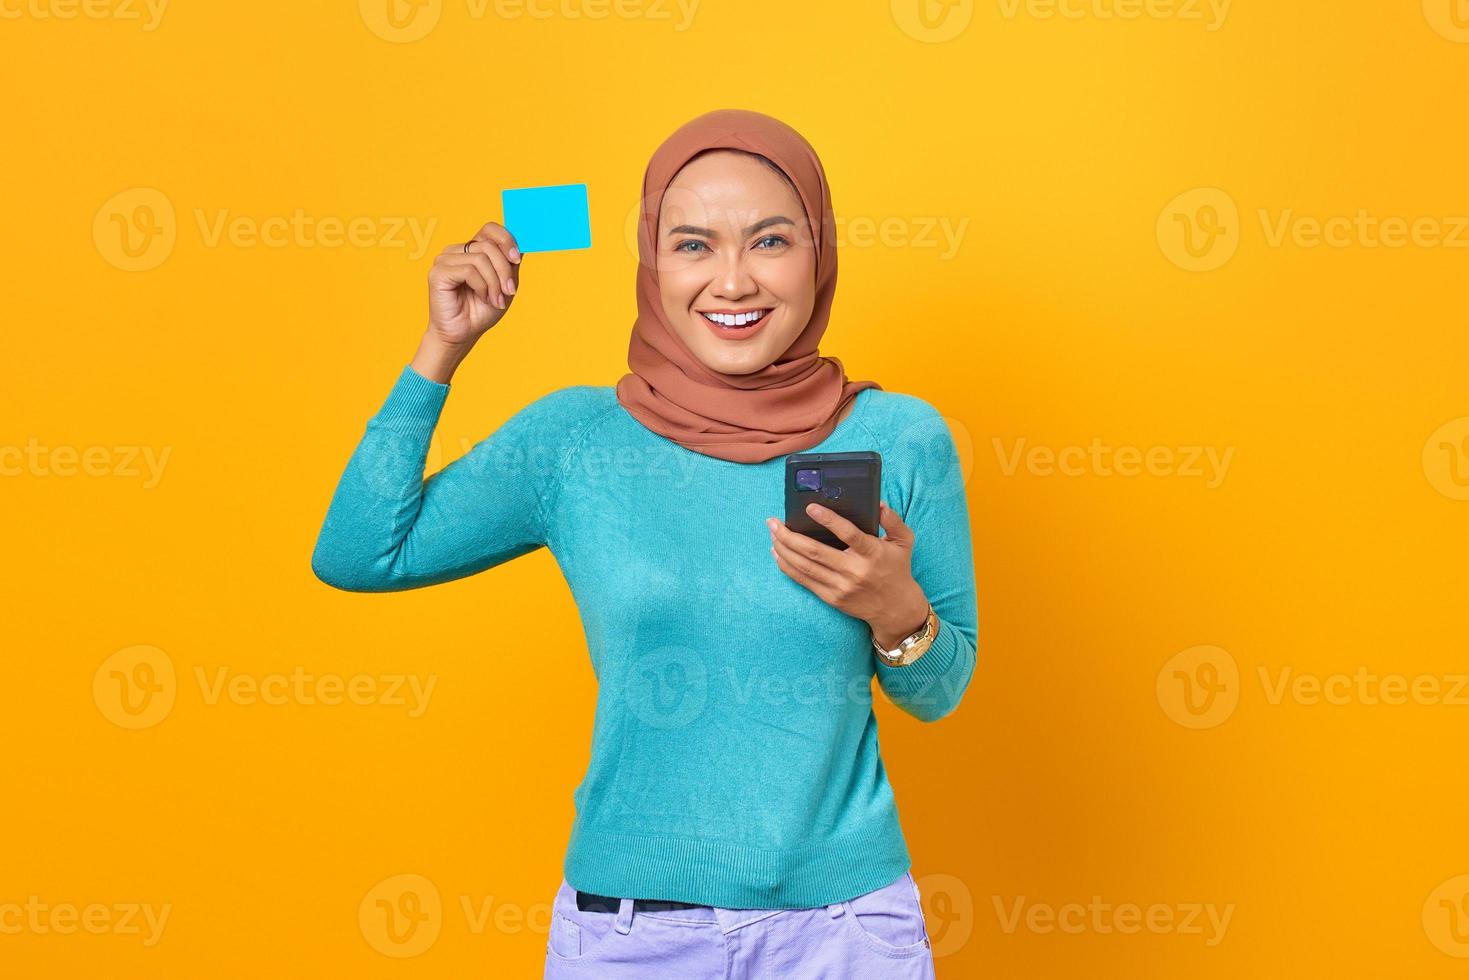 jovem mulher asiática sorridente, mostrando o cartão de crédito e segurando um telefone celular no fundo amarelo foto